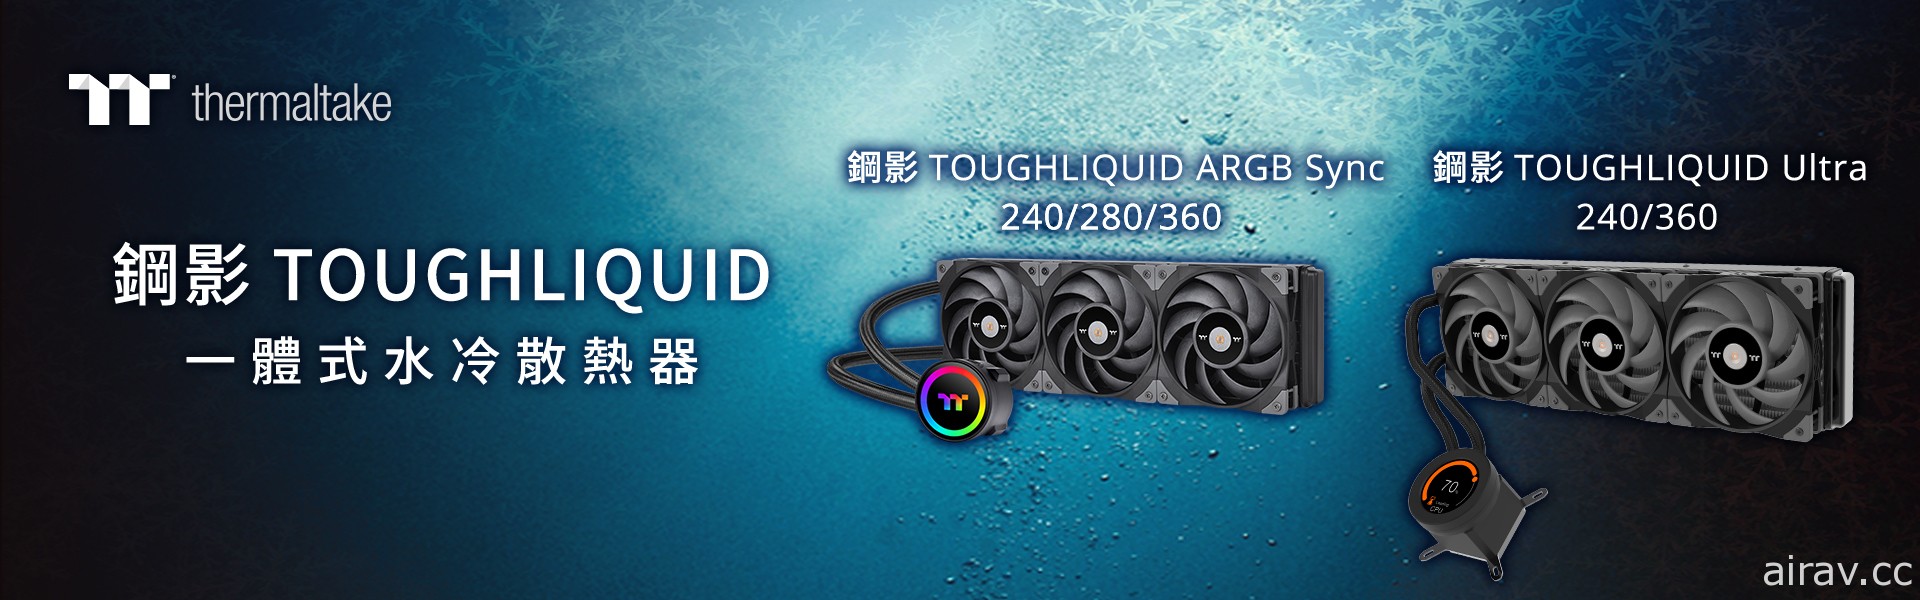 2021 曜越線上電腦展推出鋼影 TOUGHLIQUID 系列一體式水冷散熱器